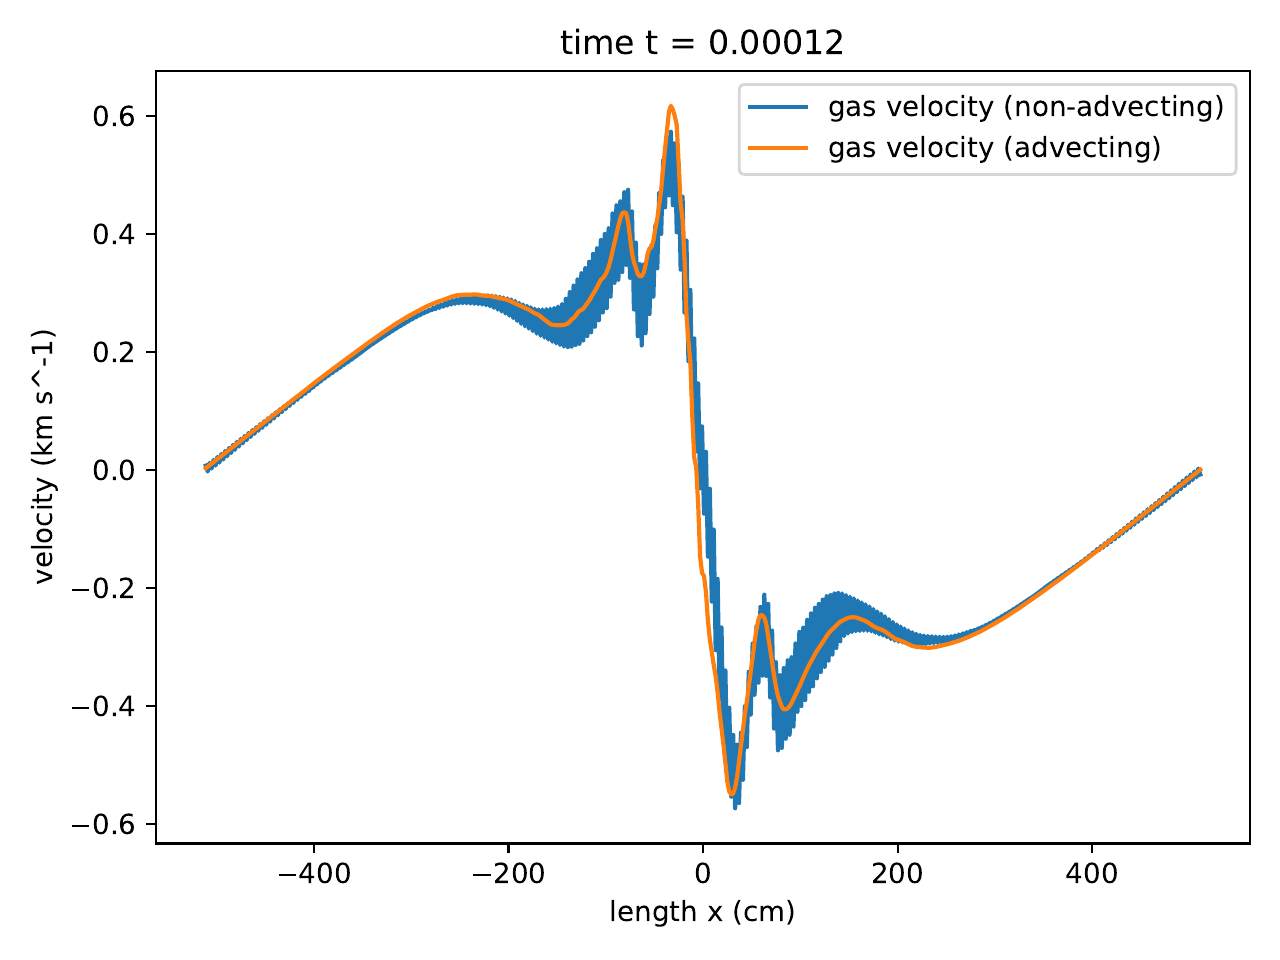 radhydro_pulse_velocity-dynamic-diffusion